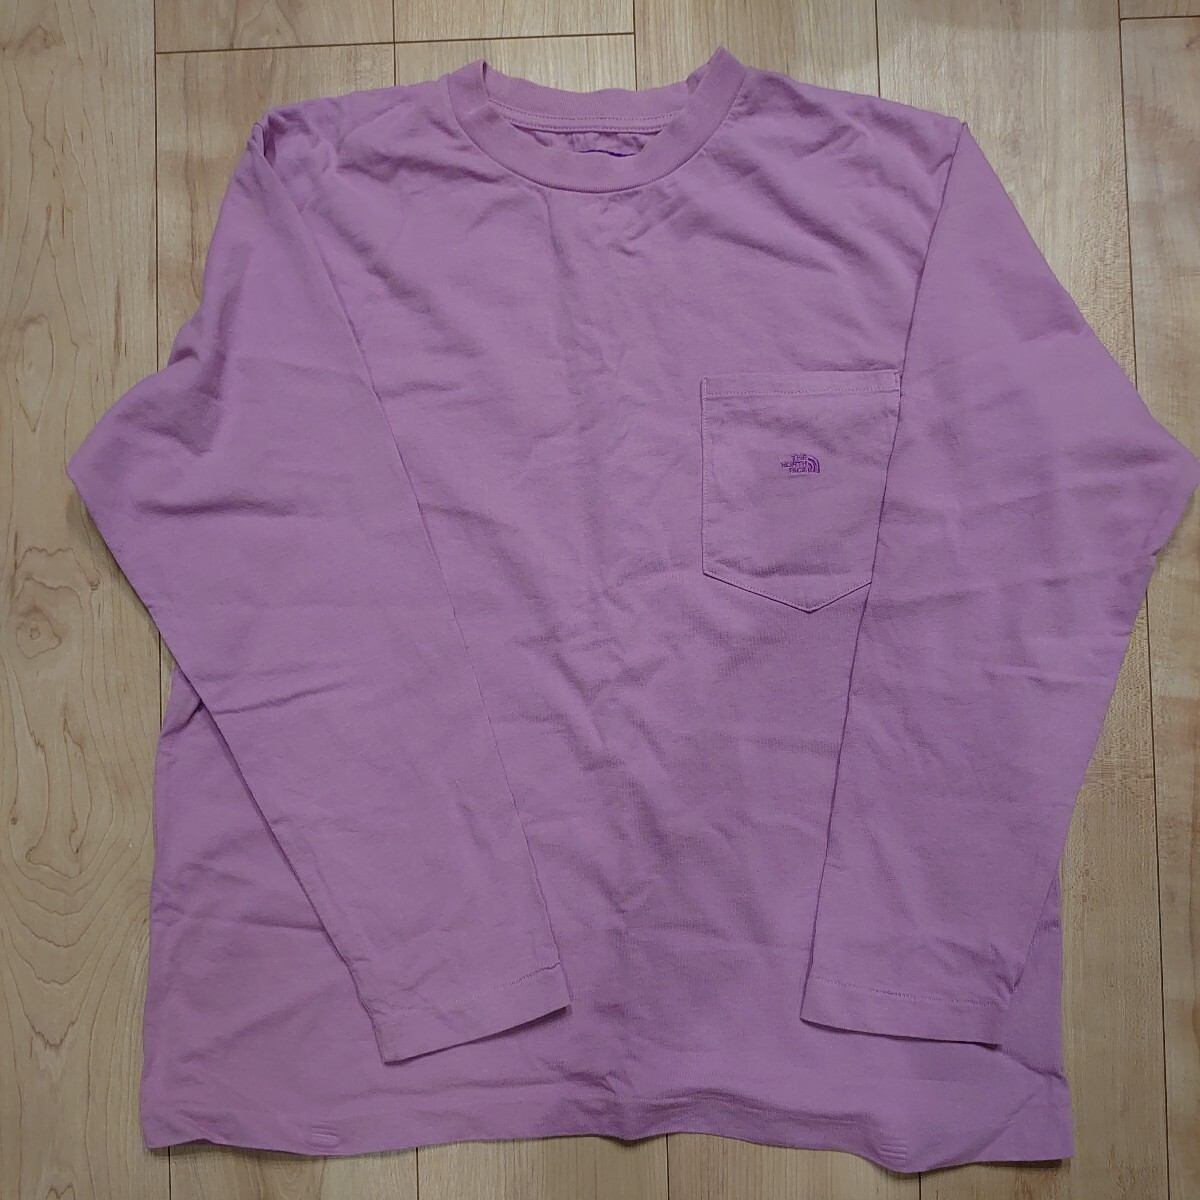 THE NORTH FACE PURPLELABELノースフェイスパープルレーベル NT3802N ポケットロングTシャツ メンズSサイズ ピンクの画像1